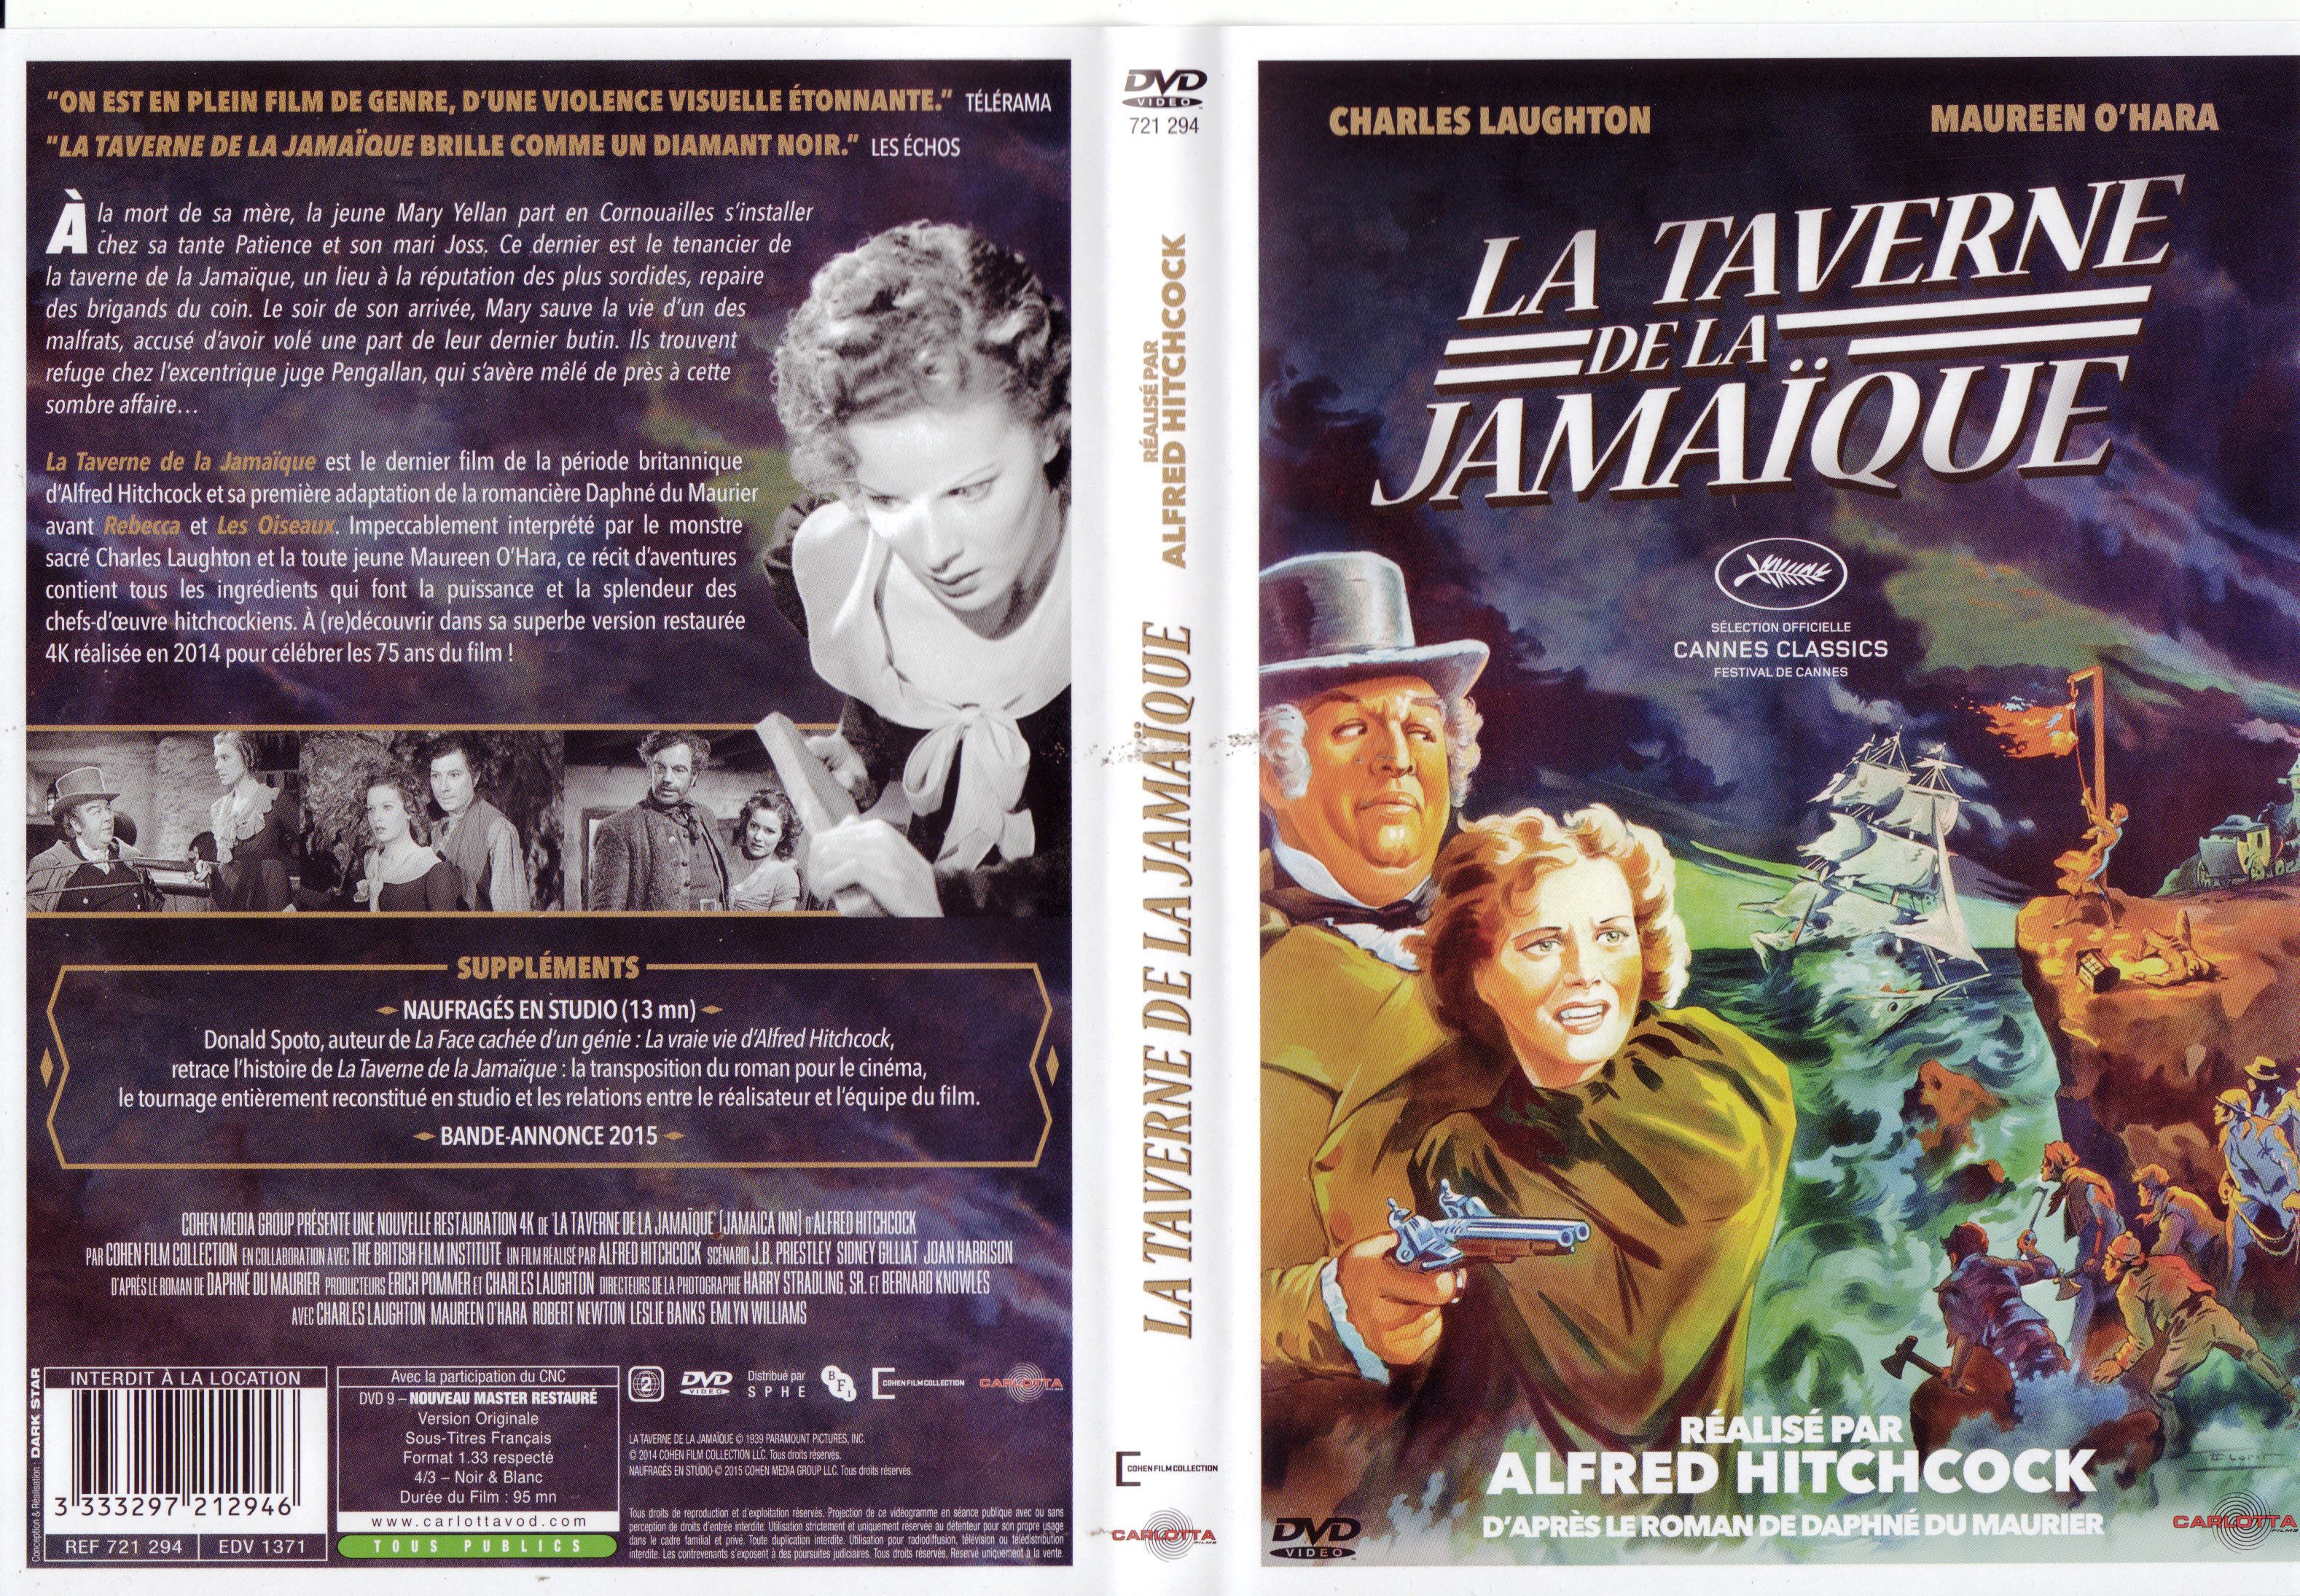 Jaquette DVD La taverne de la Jamaique v2